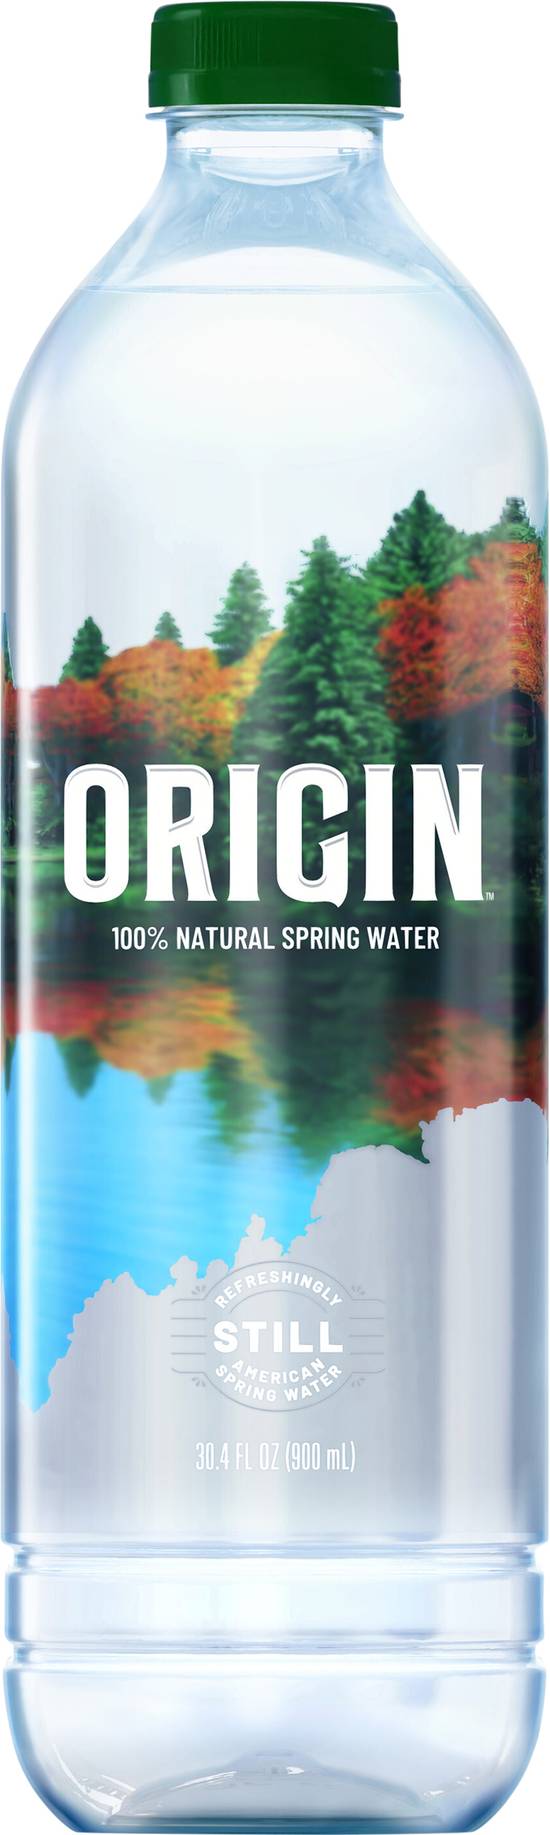 ORIGIN Natural Spring Water